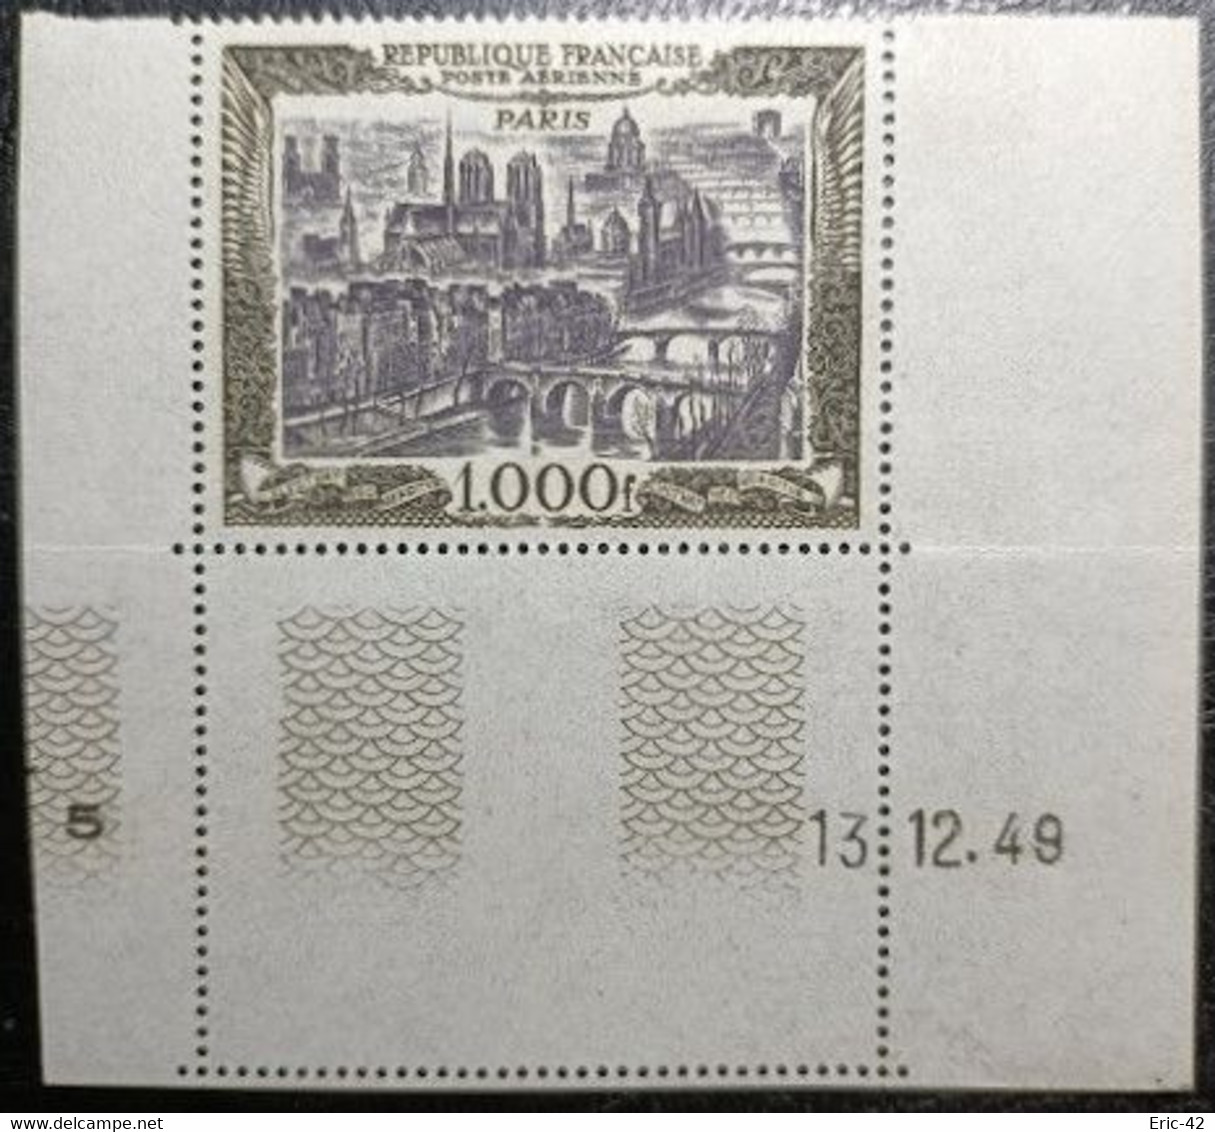 RARE N° 29 Vue De Paris 1000f. Noir Et Brun Violacé Neuf** MNH. Coin Datés Du 13.12.1949 - Luftpost